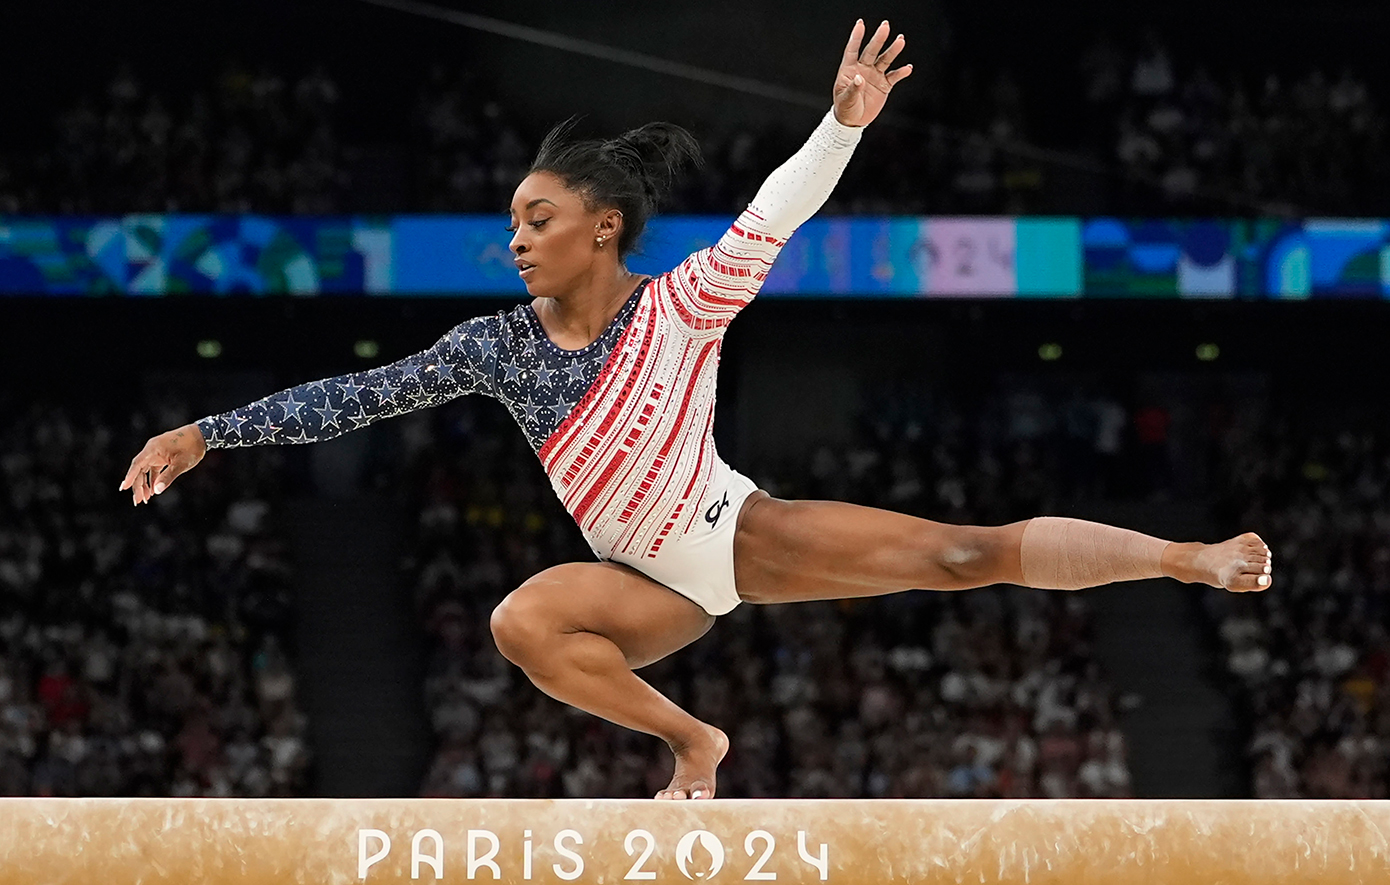 Ολυμπιακοί Αγώνες 2024: Η Σιμόν Μπάιλς το κάνει να φαίνεται εύκολο &#8211; Το 5ο χρυσό στην ενόργανη και οι δυσκολίες που έχει αντιμετωπίσει